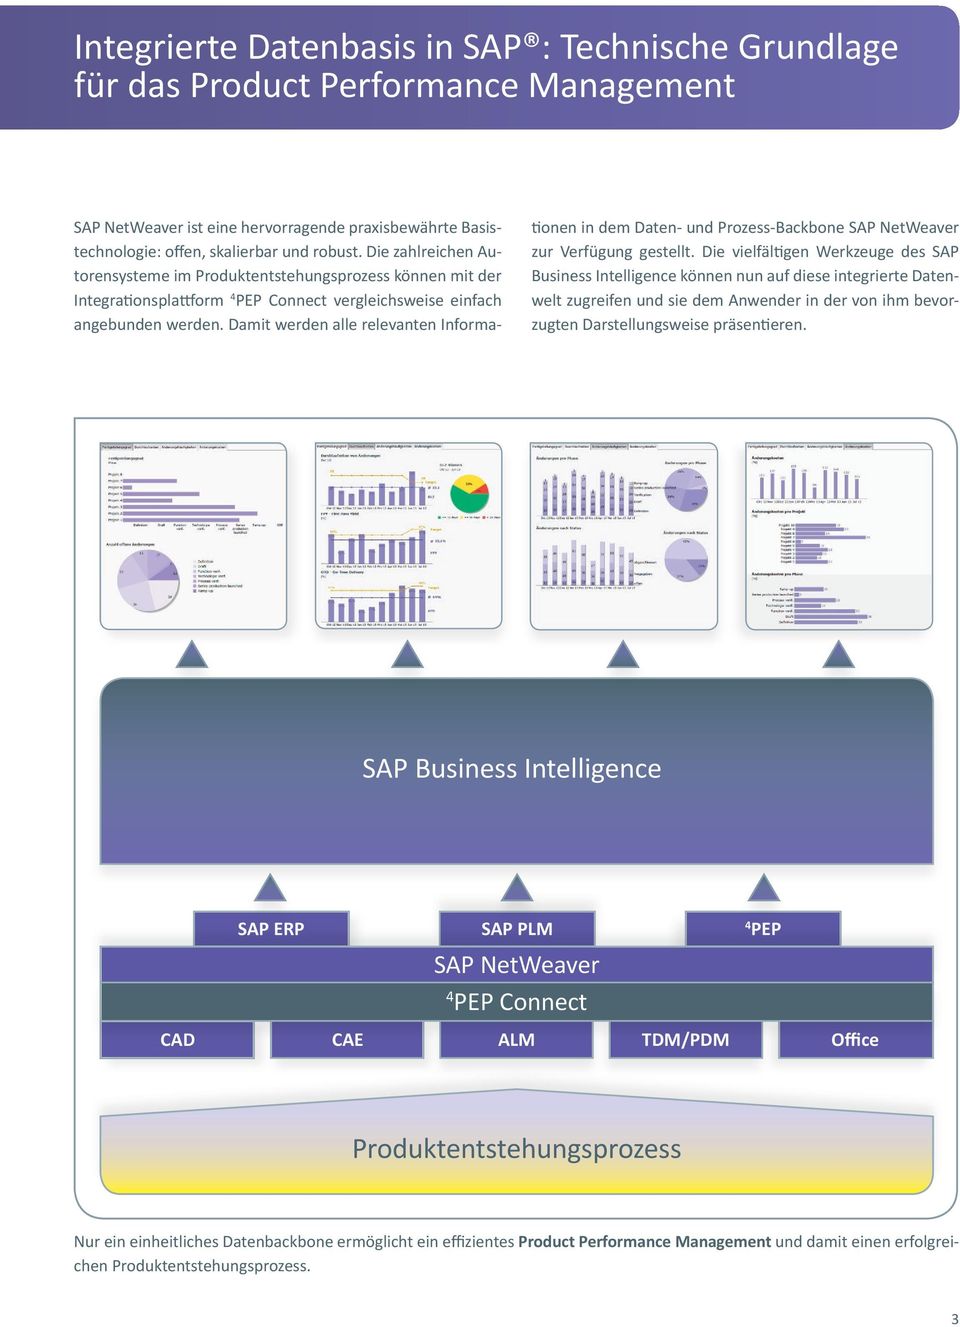 Damit werden alle relevanten Informationen in dem Daten- und Prozess-Backbone SAP NetWeaver zur Verfügung gestellt.